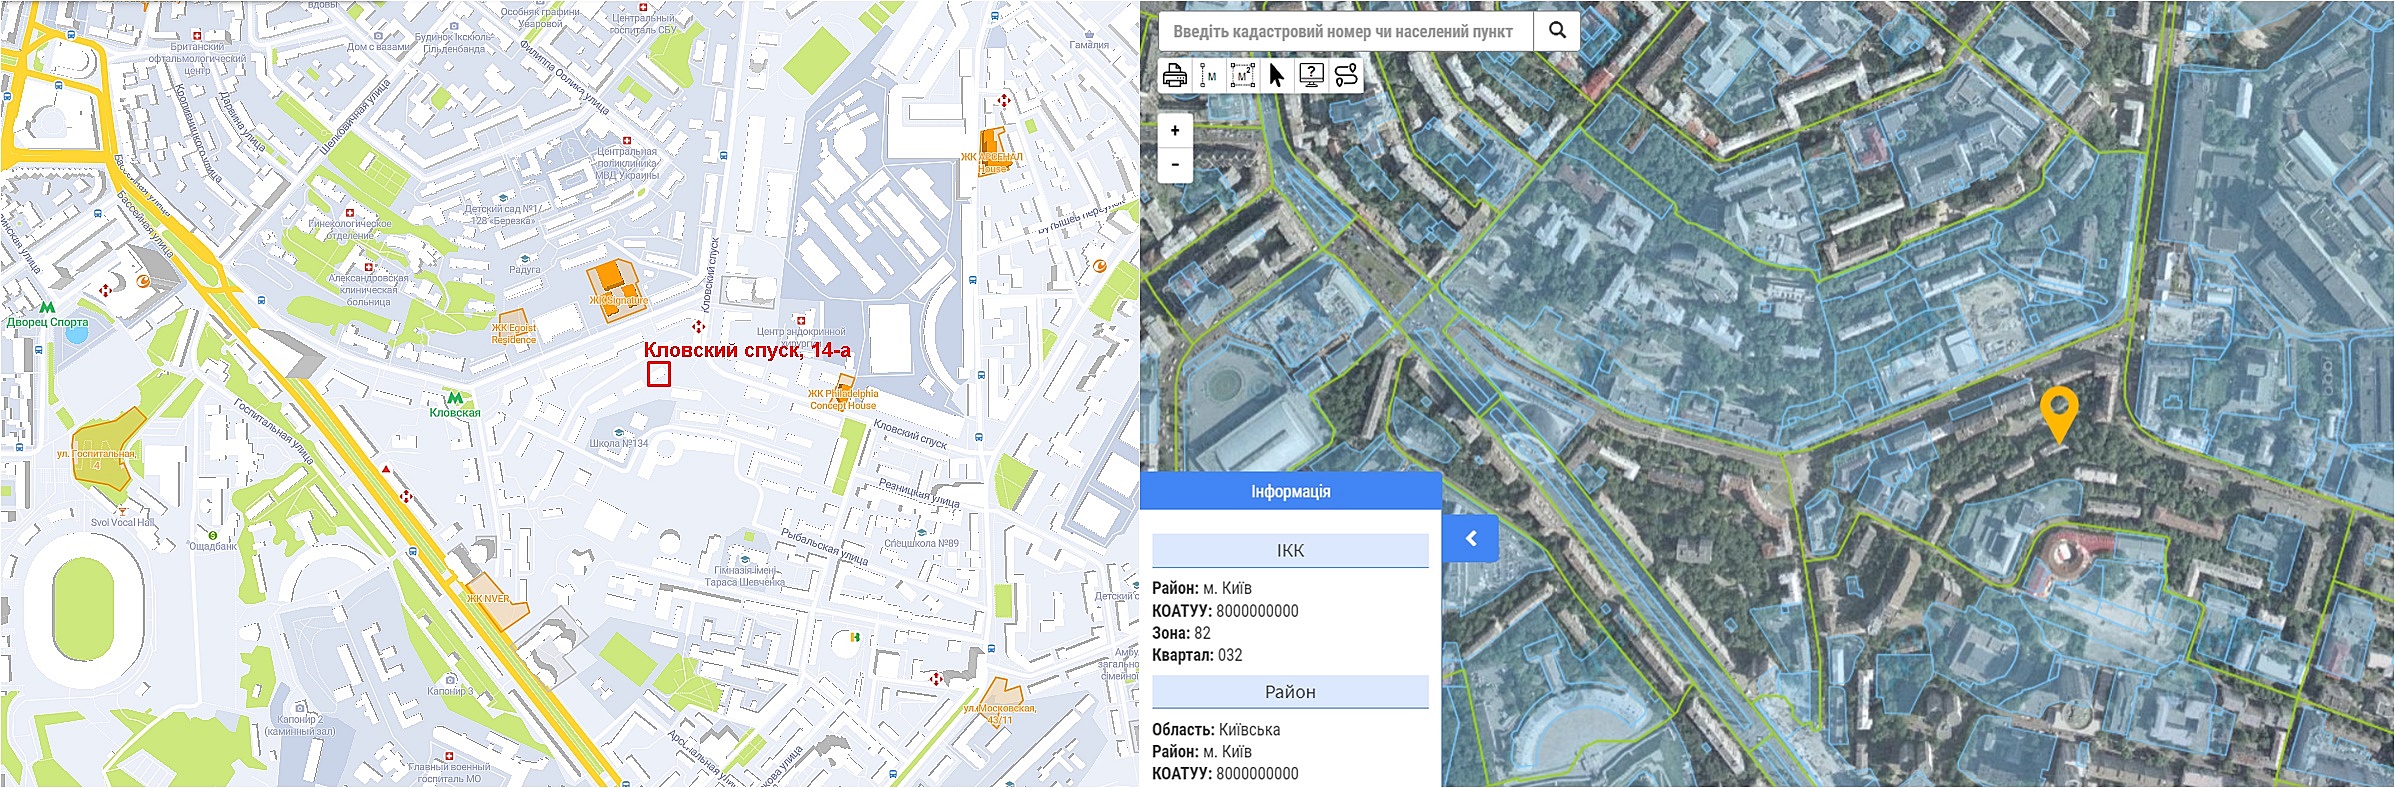 Проект реконструкции по ул. Кловский Спуск, 14-А на карте и данные кадастра